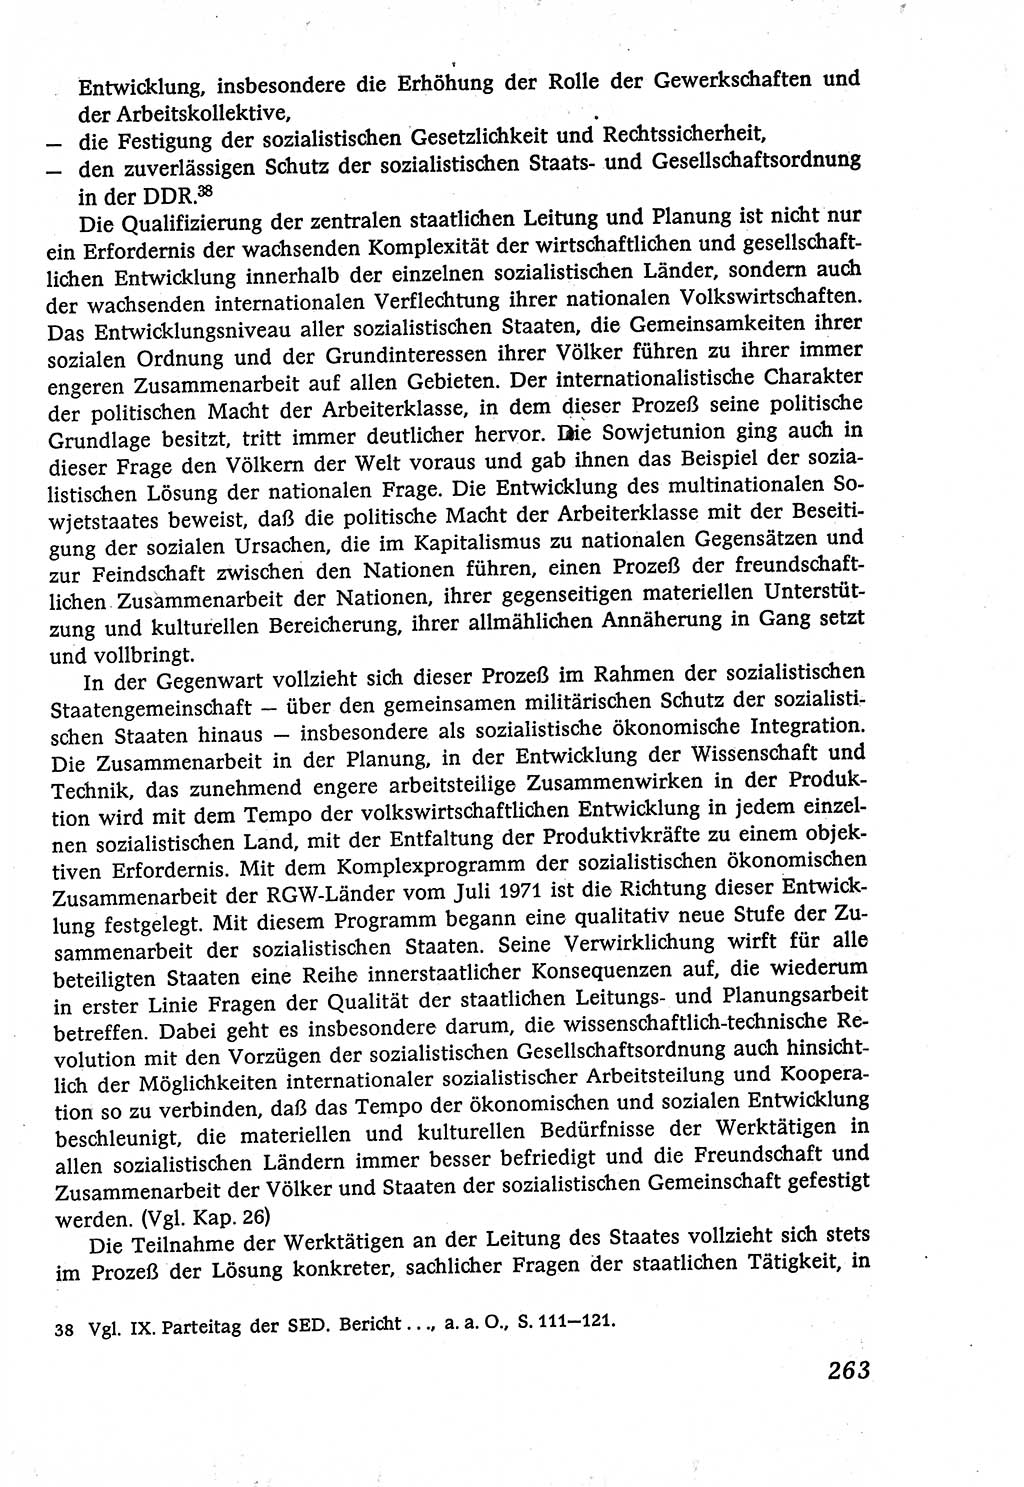 Marxistisch-leninistische (ML) Staats- und Rechtstheorie [Deutsche Demokratische Republik (DDR)], Lehrbuch 1980, Seite 263 (ML St.-R.-Th. DDR Lb. 1980, S. 263)